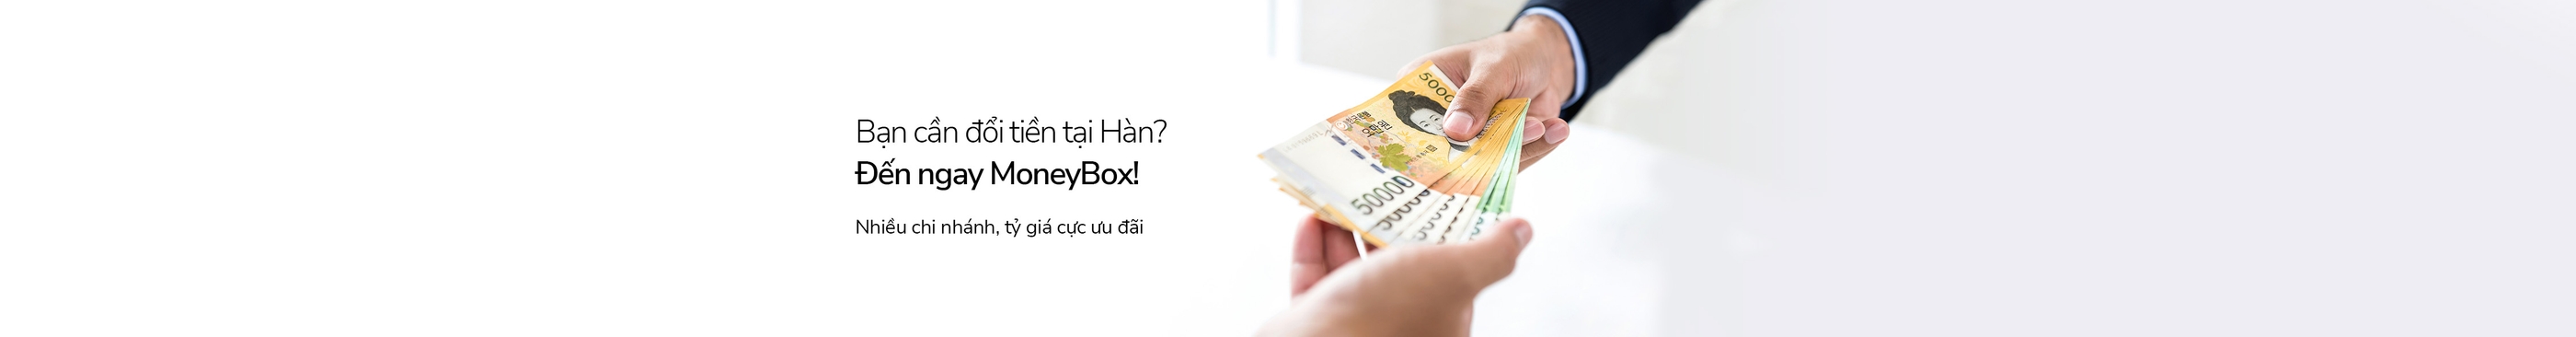 Bạn cần đổi tiền tại Hàn?